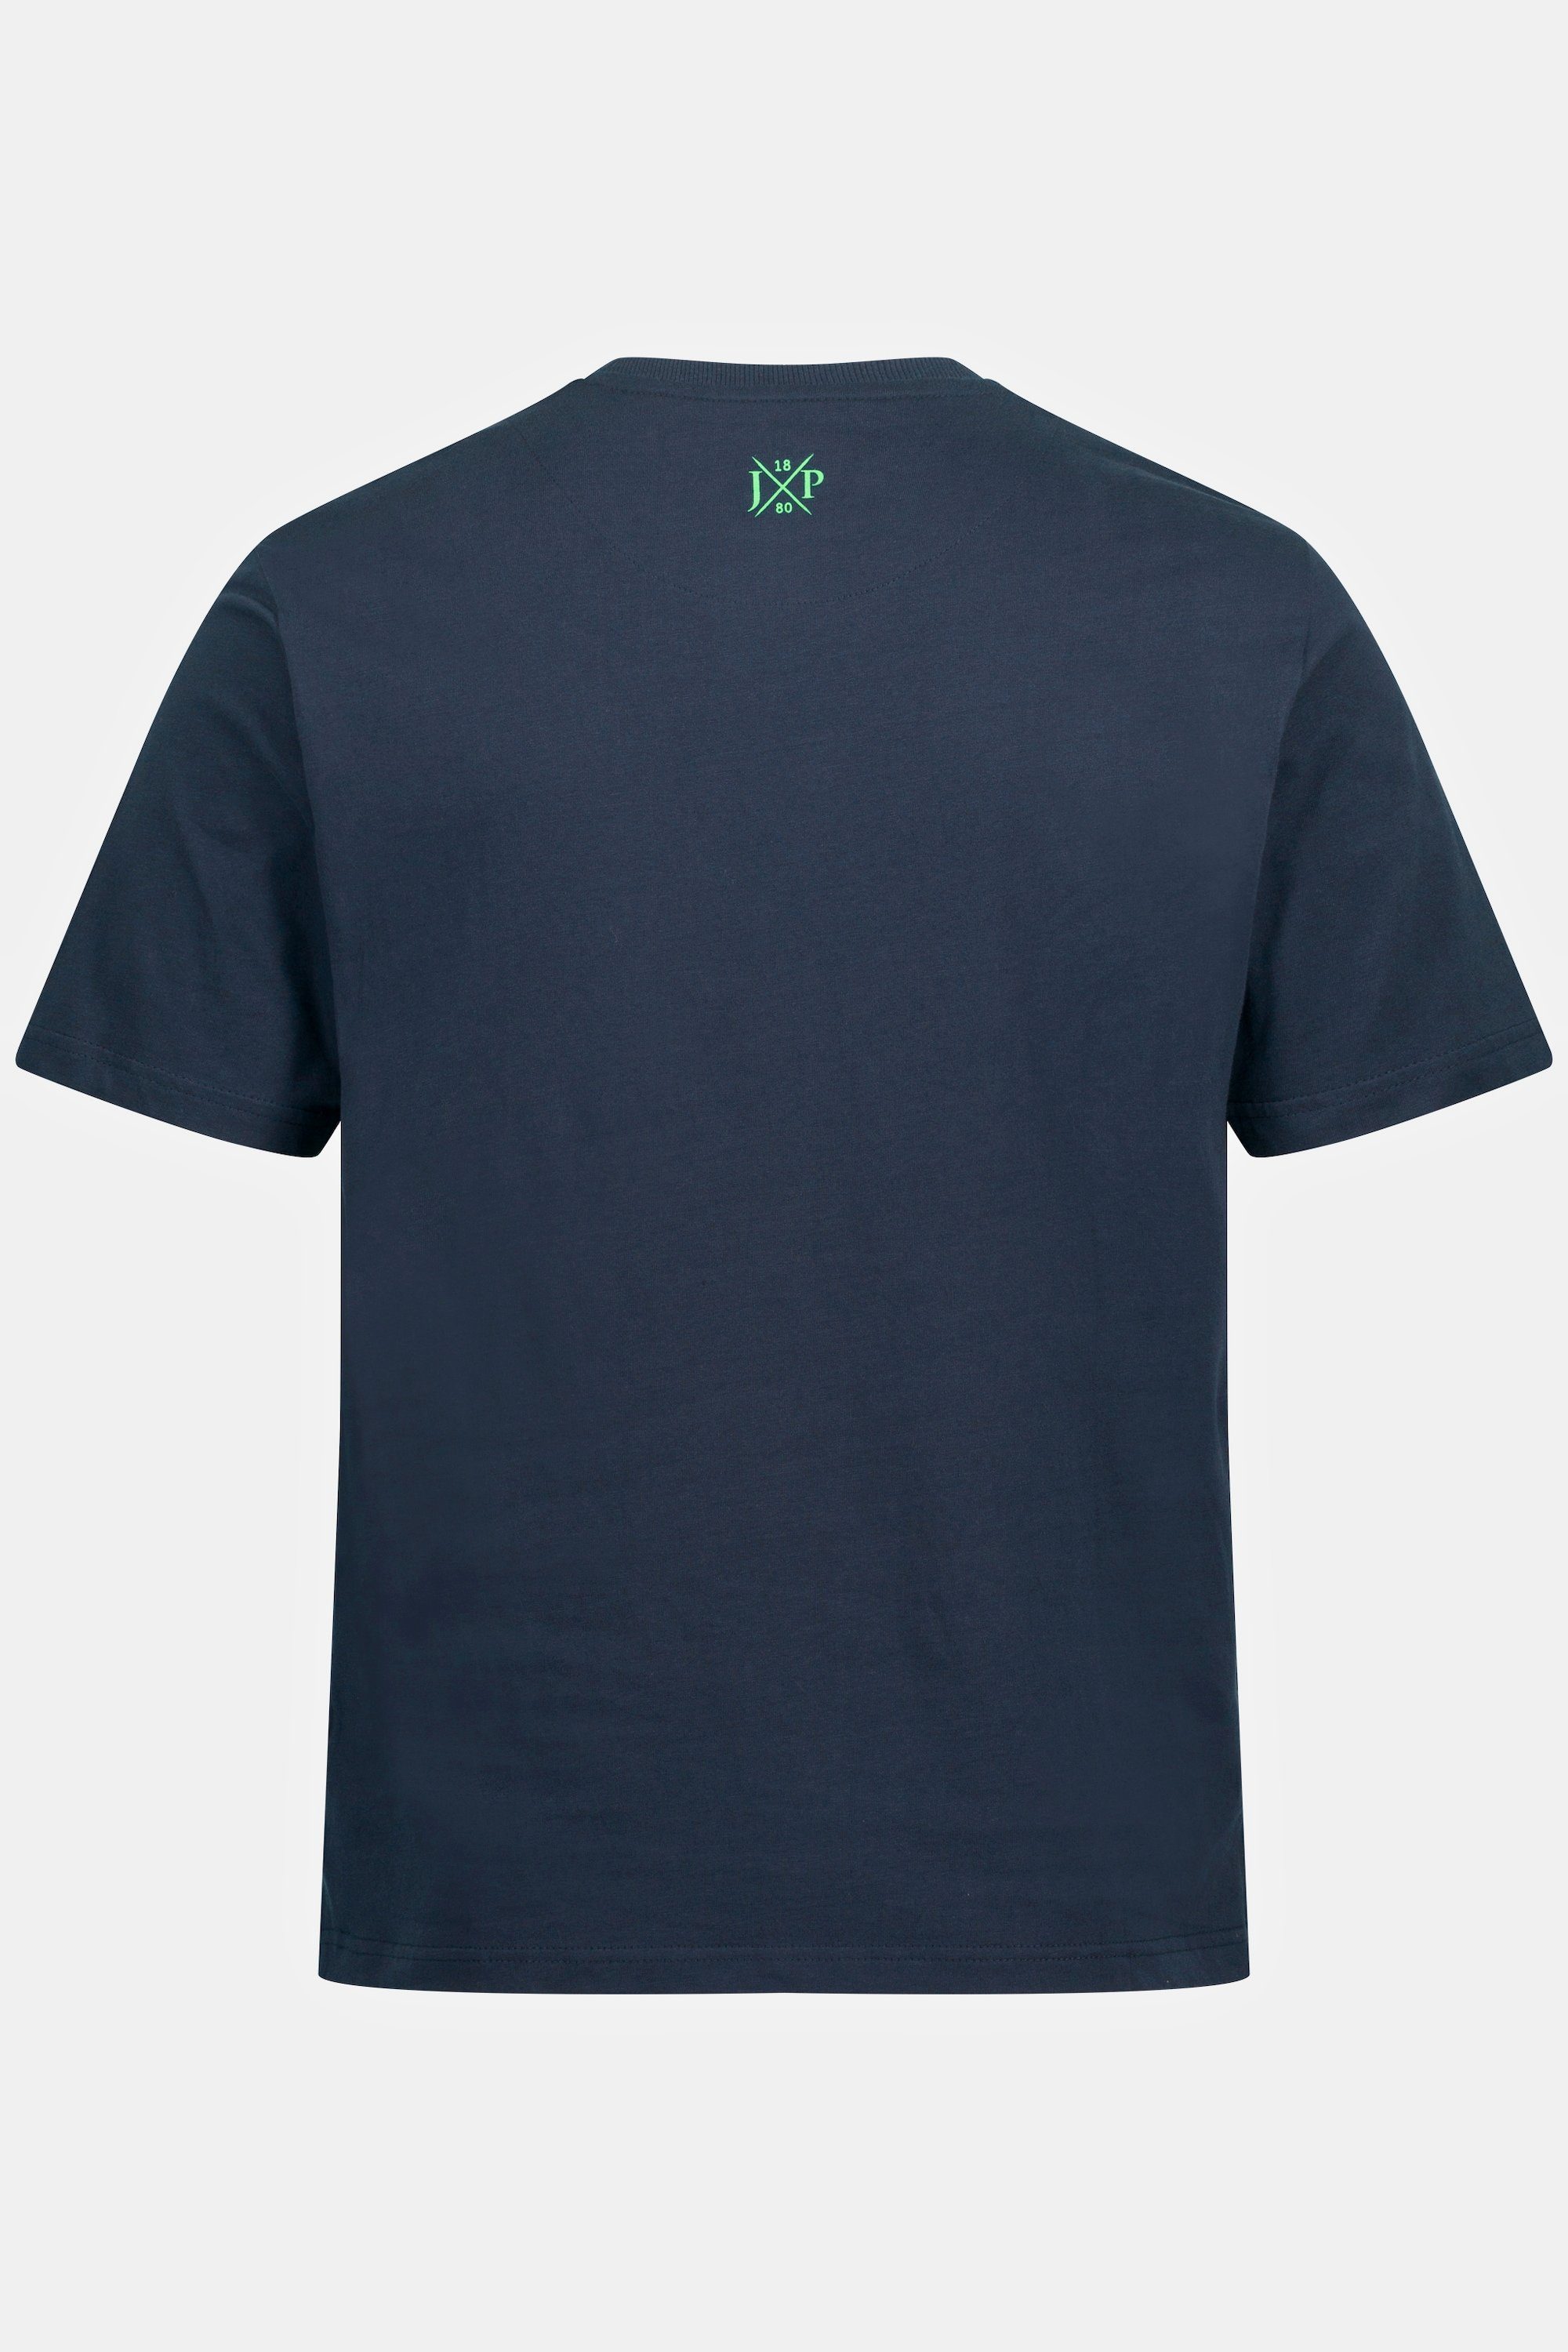 T-Shirt Print JP1880 Palmen Rundhals T-Shirt Halbarm